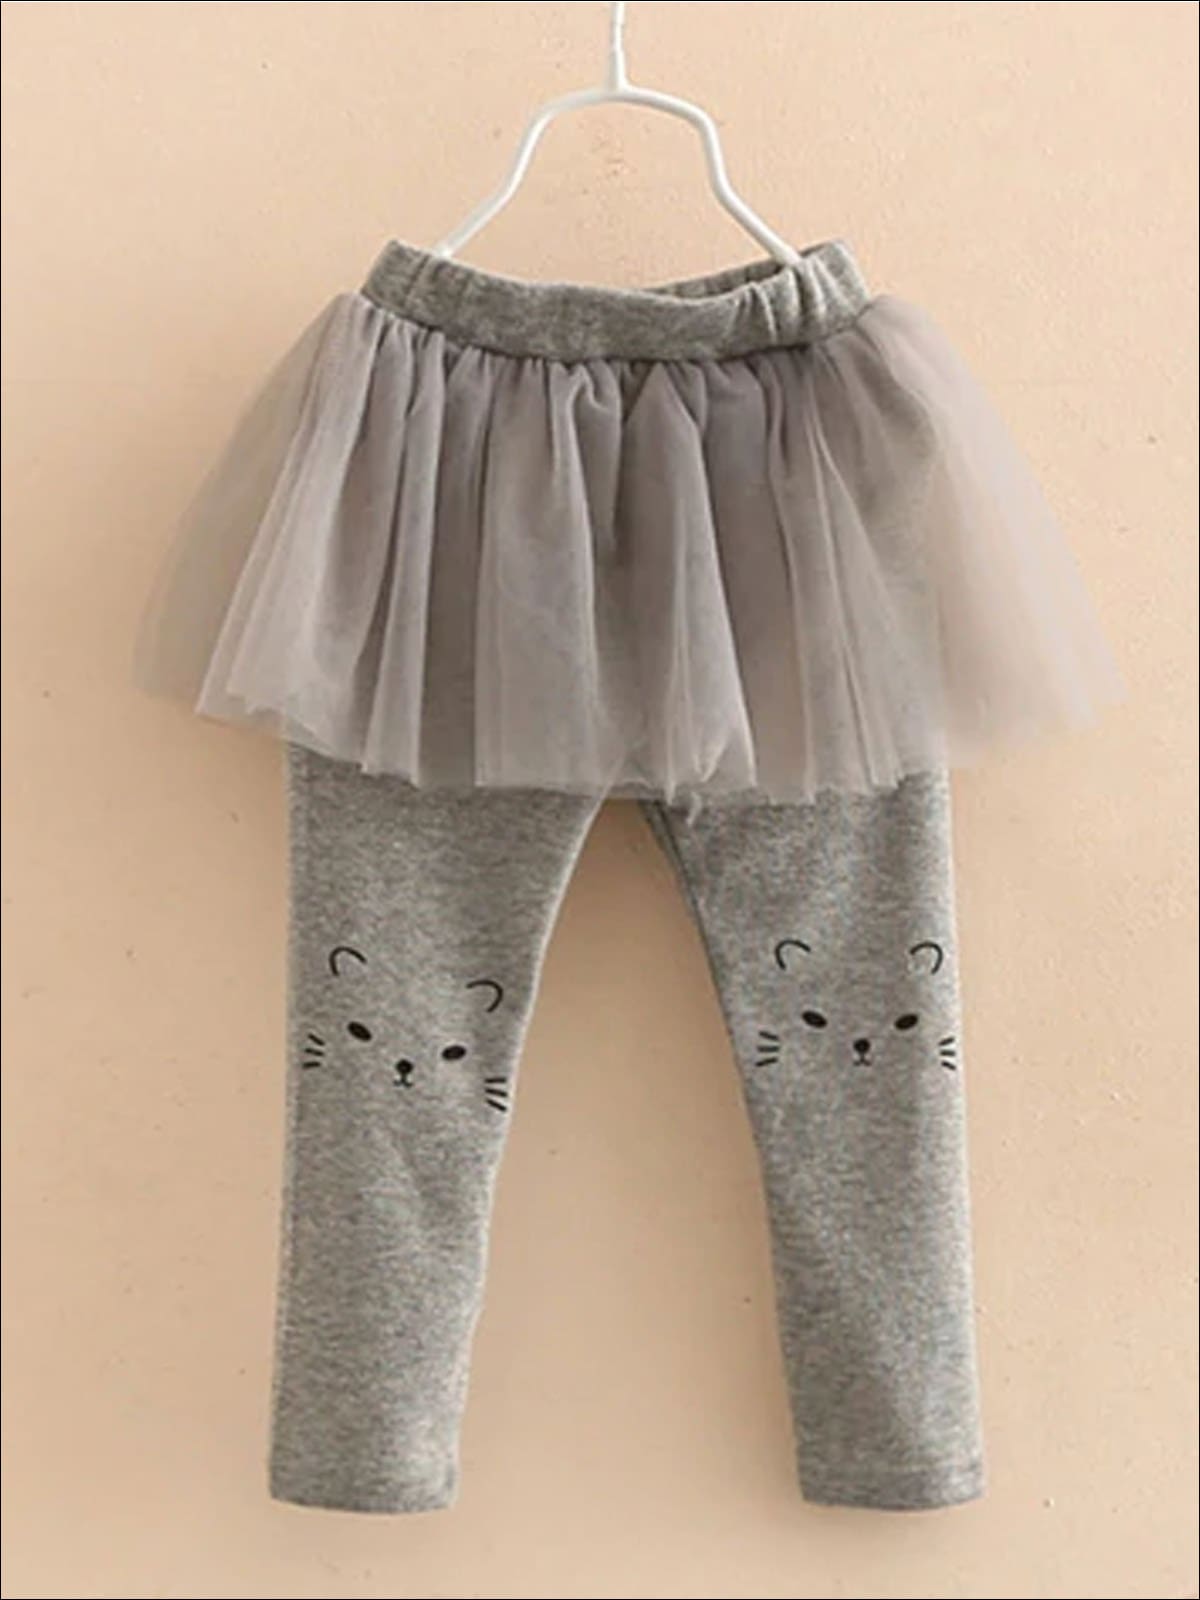 Girls Cat Print Tutu Skirt Leggings - Girls Leggings